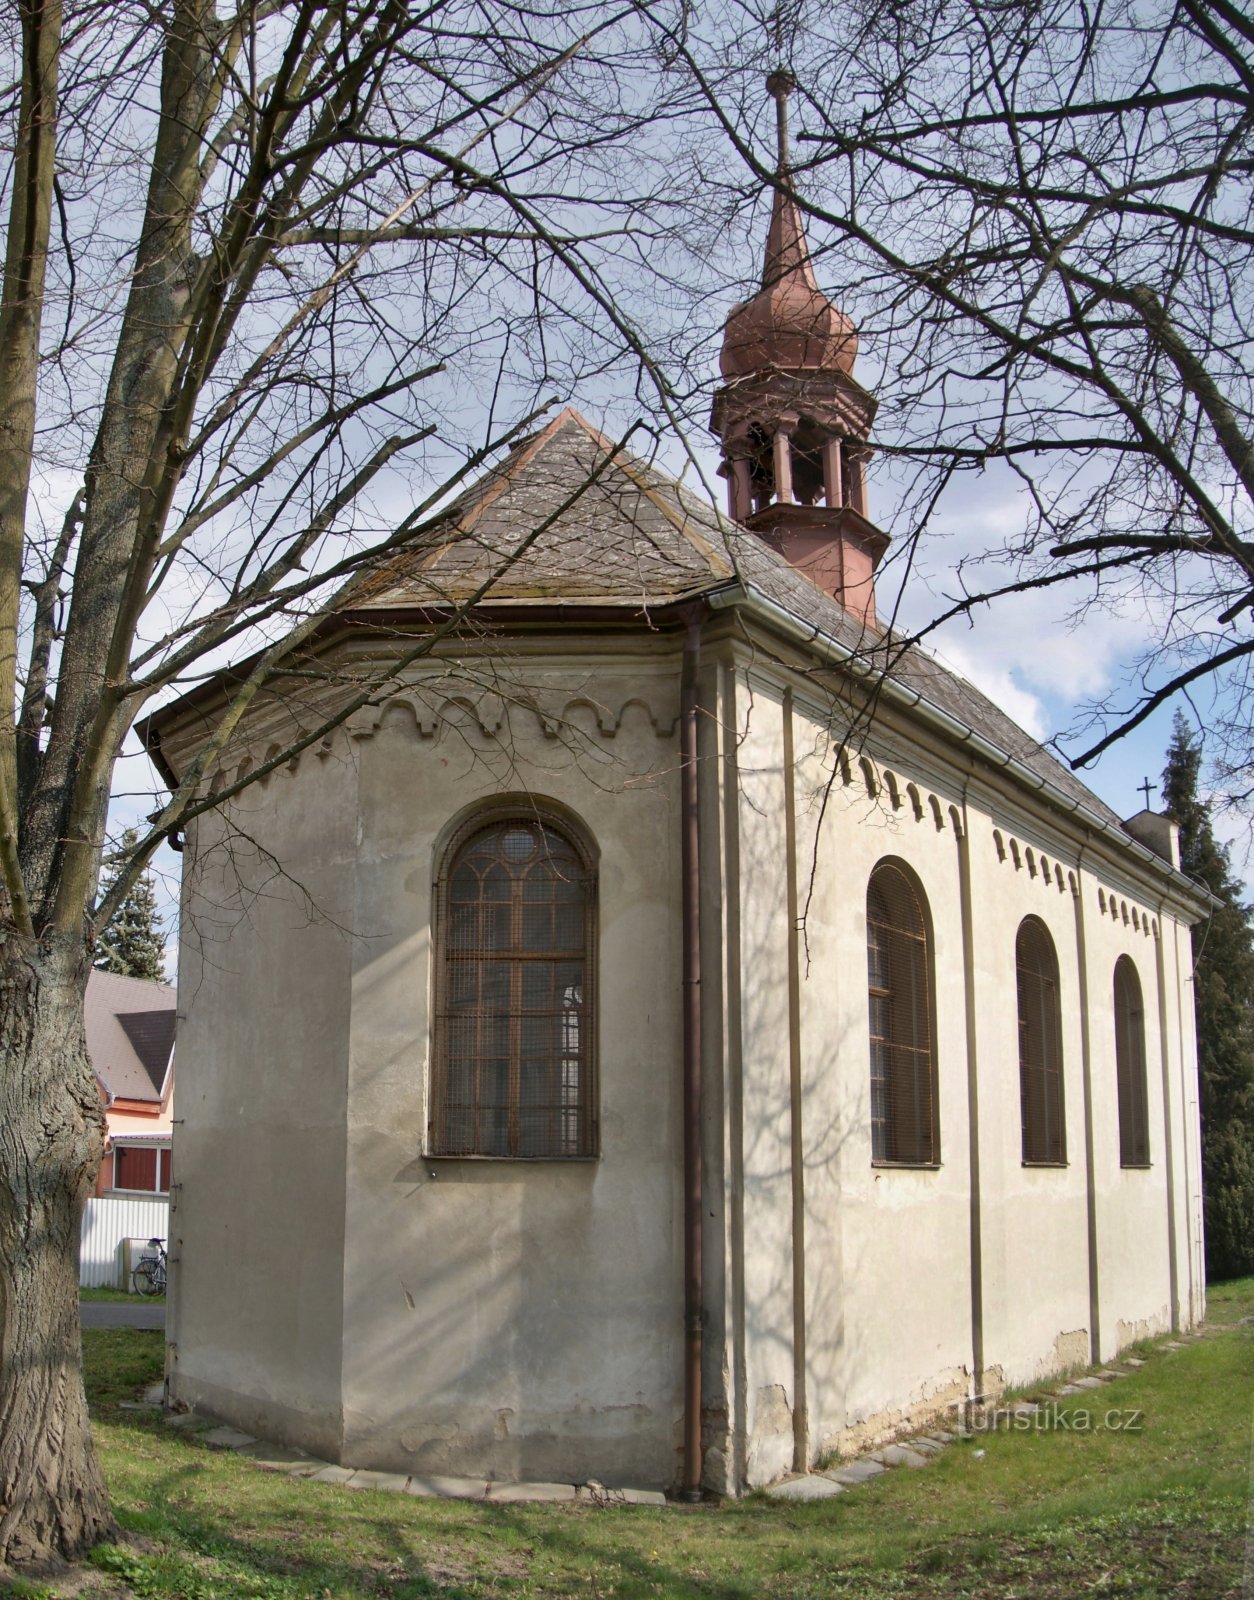 Dolní Temenice (Šumperk) - nhà nguyện của Thánh Gia